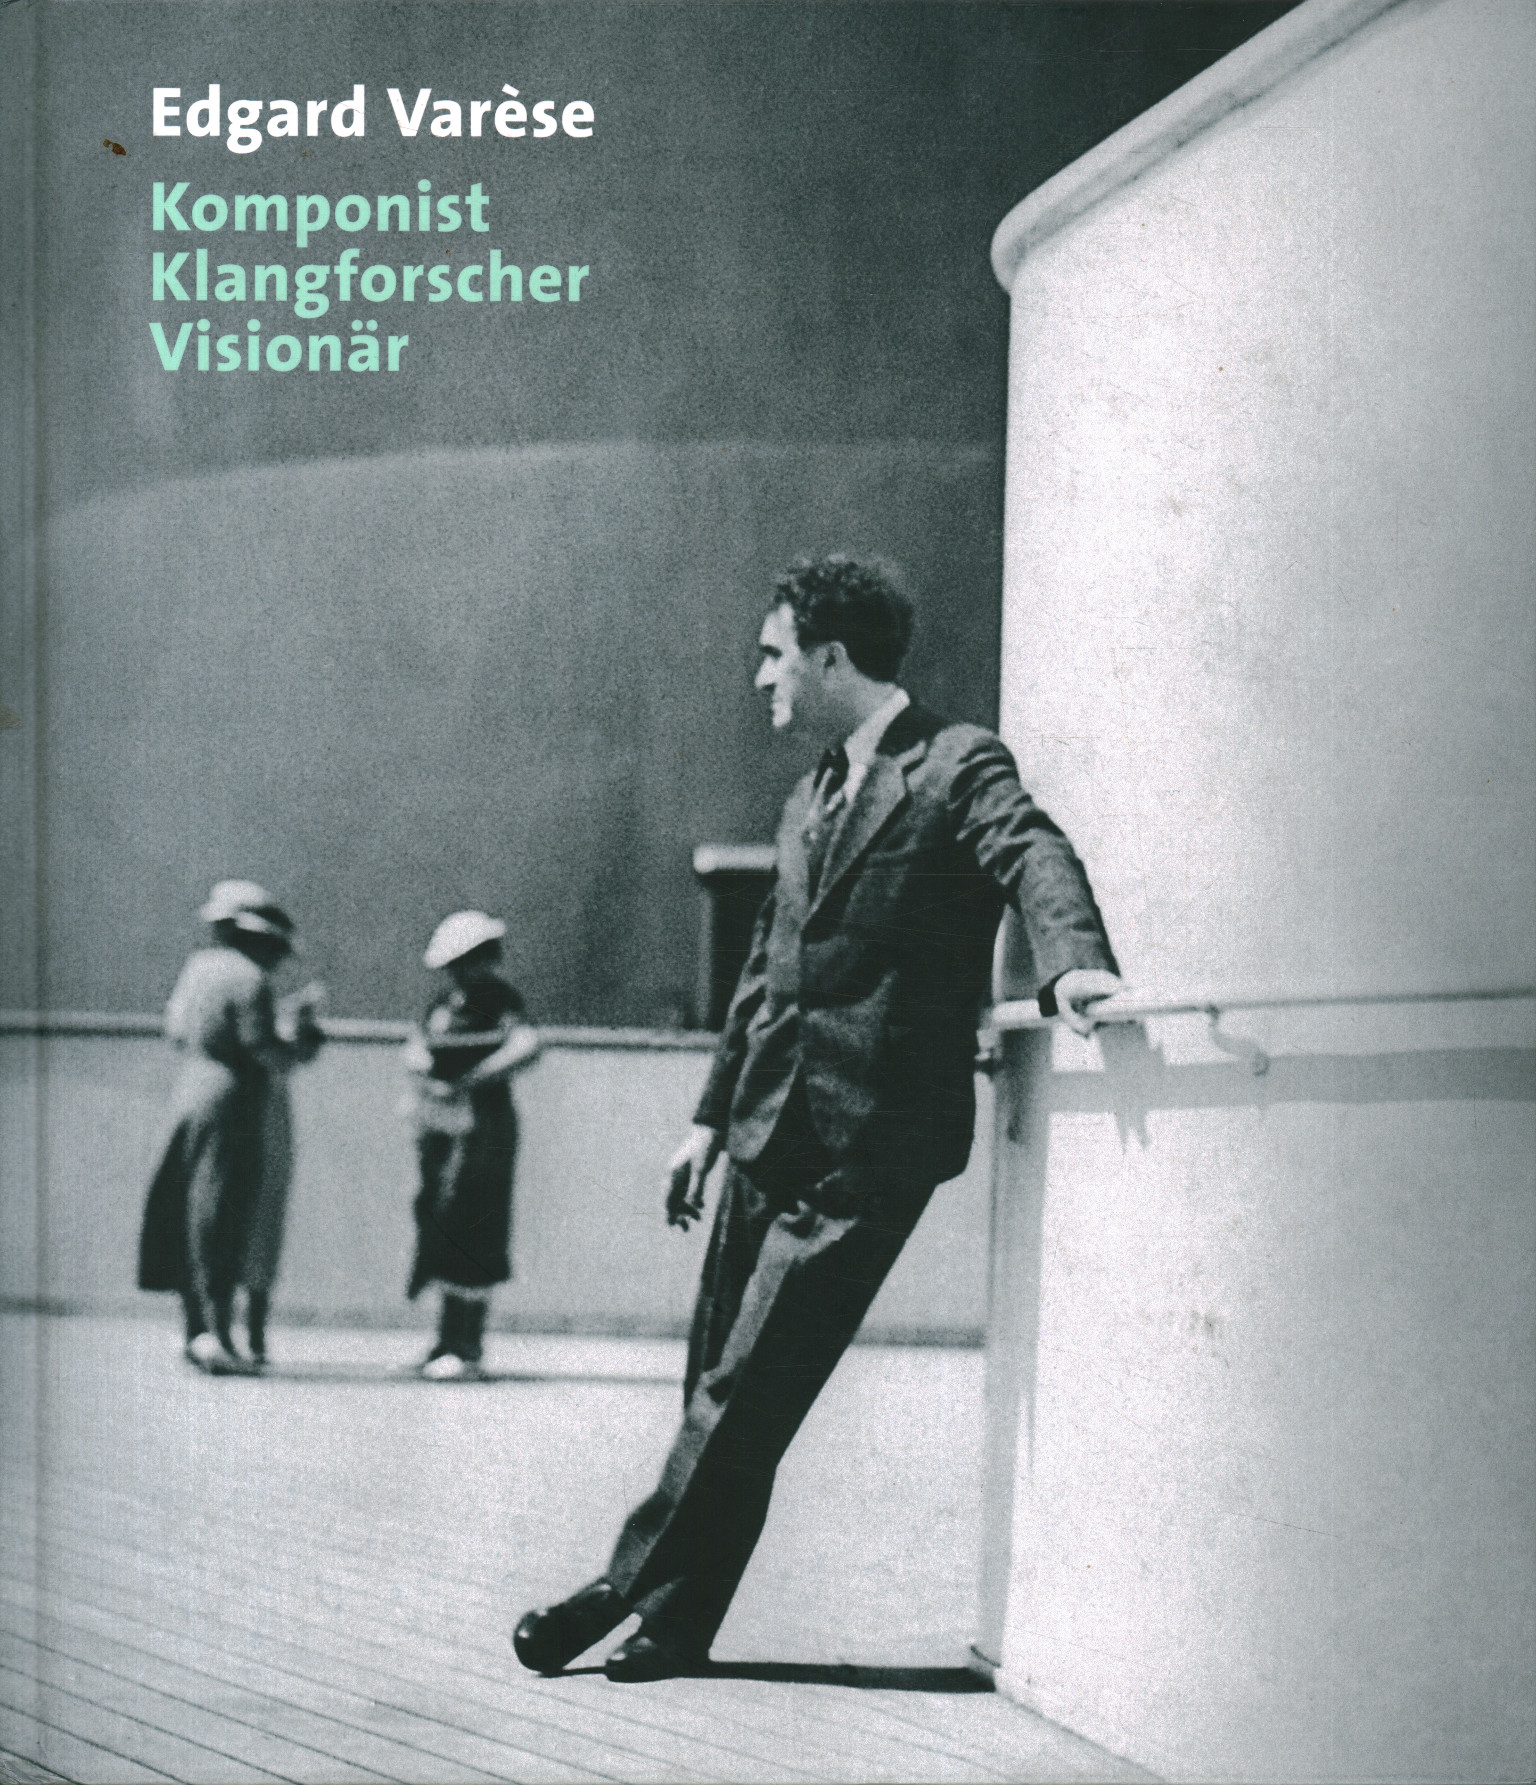 Edgard Varèse. Compositeur de Klangforscher